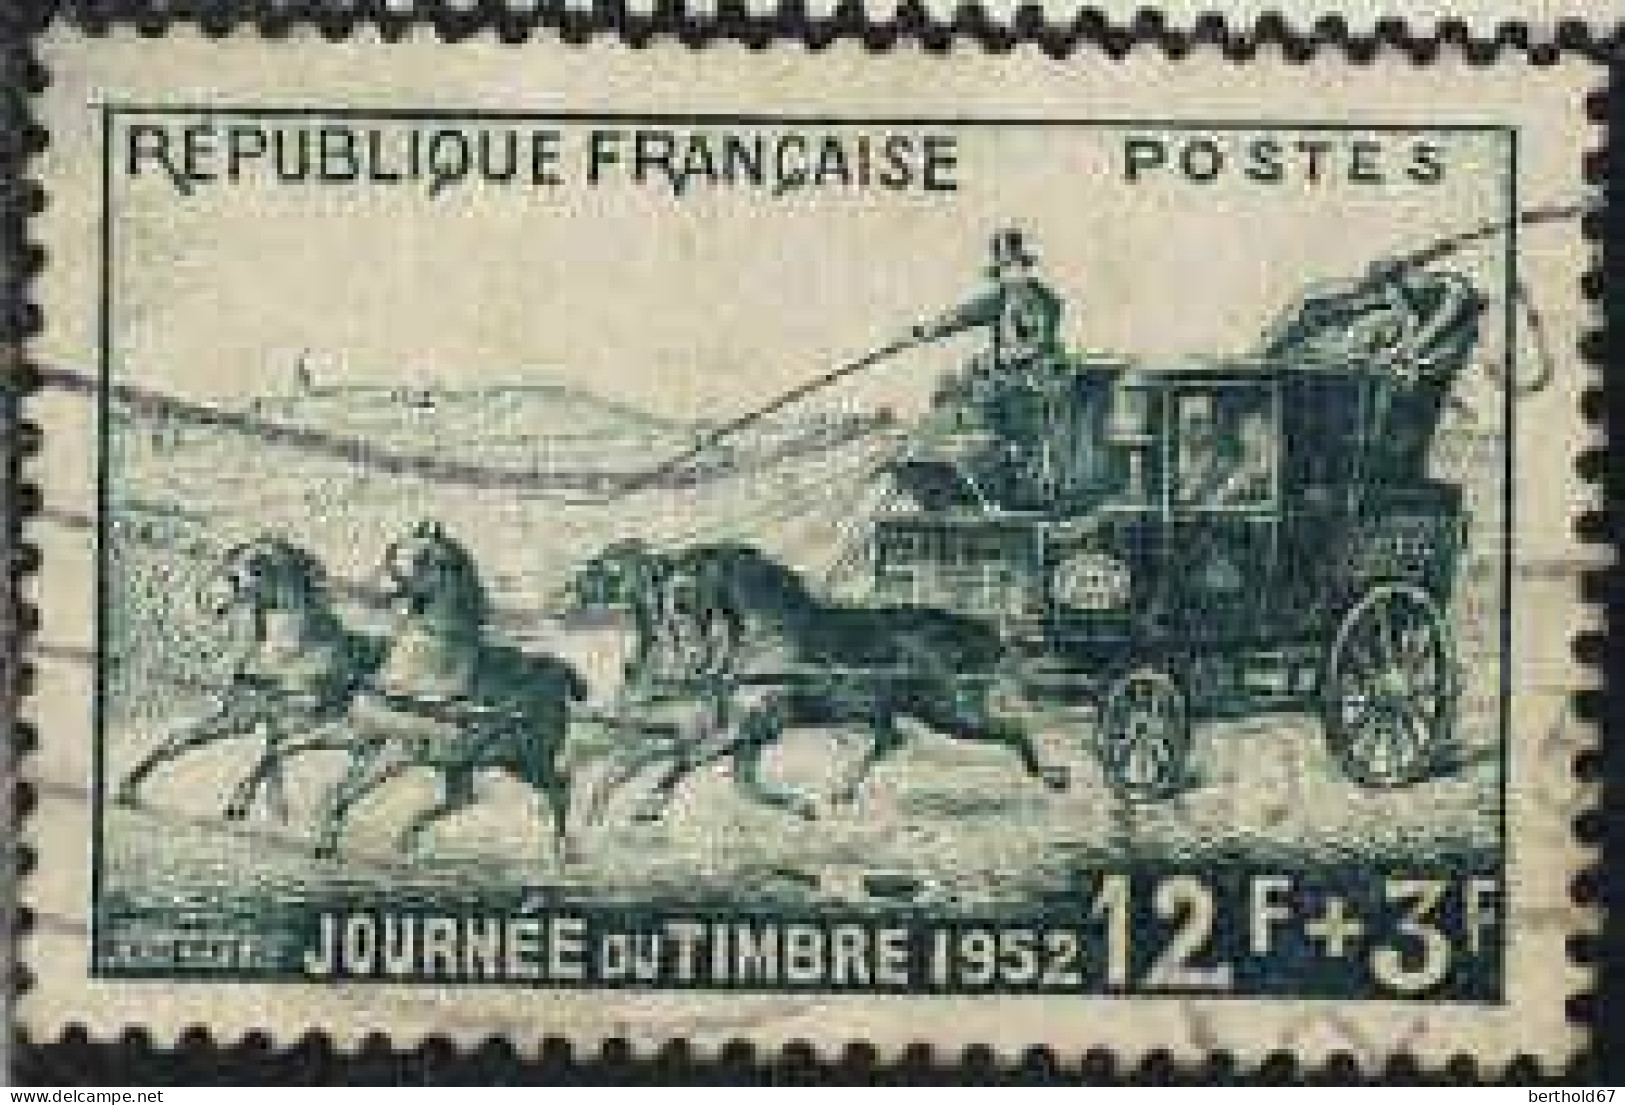 France Poste Obl Yv: 919 Mi:937 Journée Du Timbre Malle-poste (Beau Cachet Rond) (Thème) - Diligences